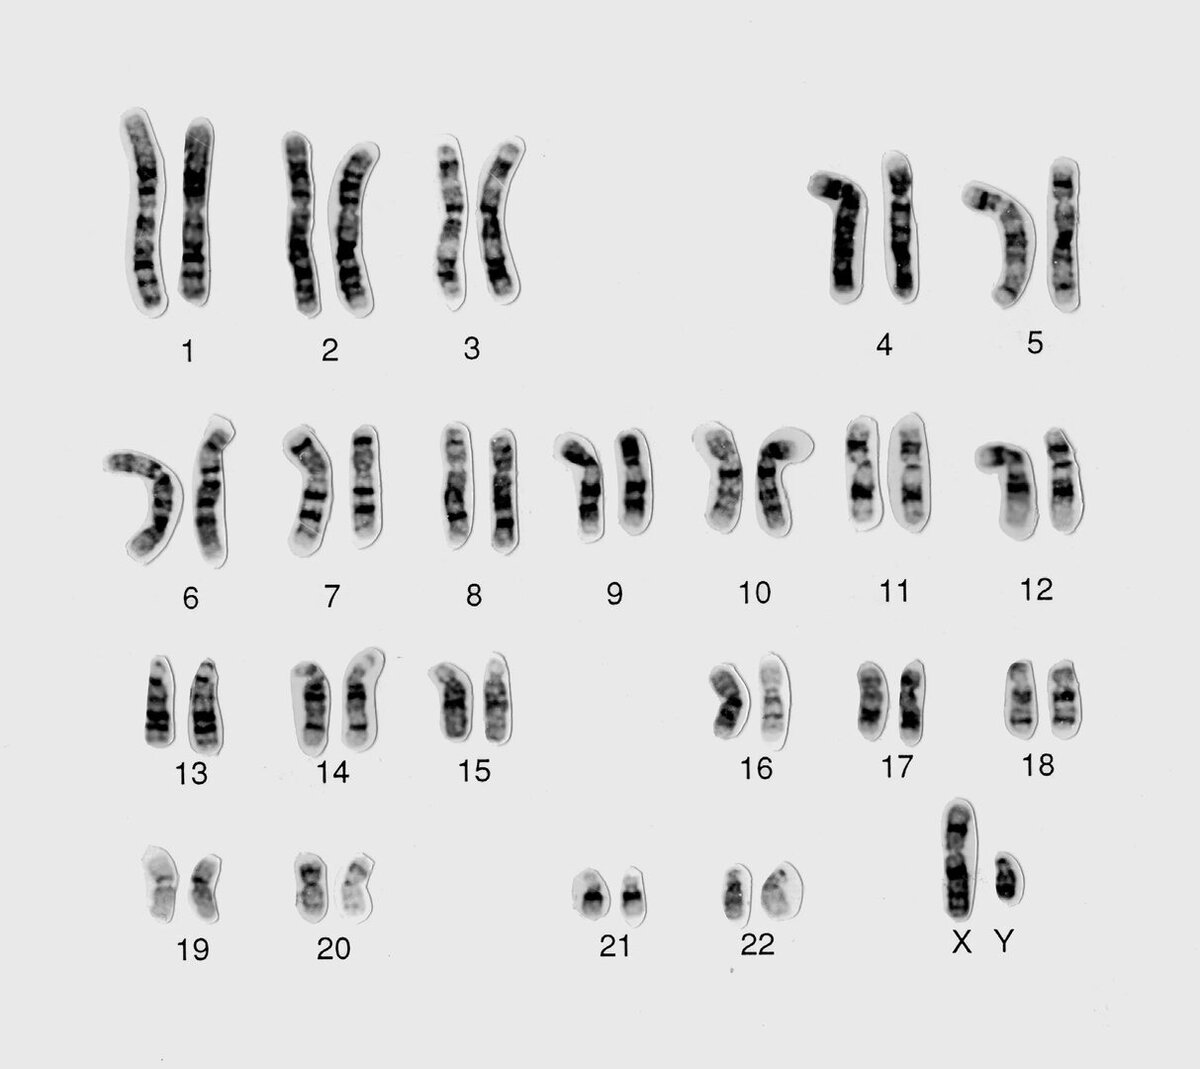 23 хромосомы у человека в клетках. Нормальный кариотип человека 46 хромосом. Мужской кариотип 46 XY. 46,XY нормальный мужской кариотип. Хромосомная карта кариотип.